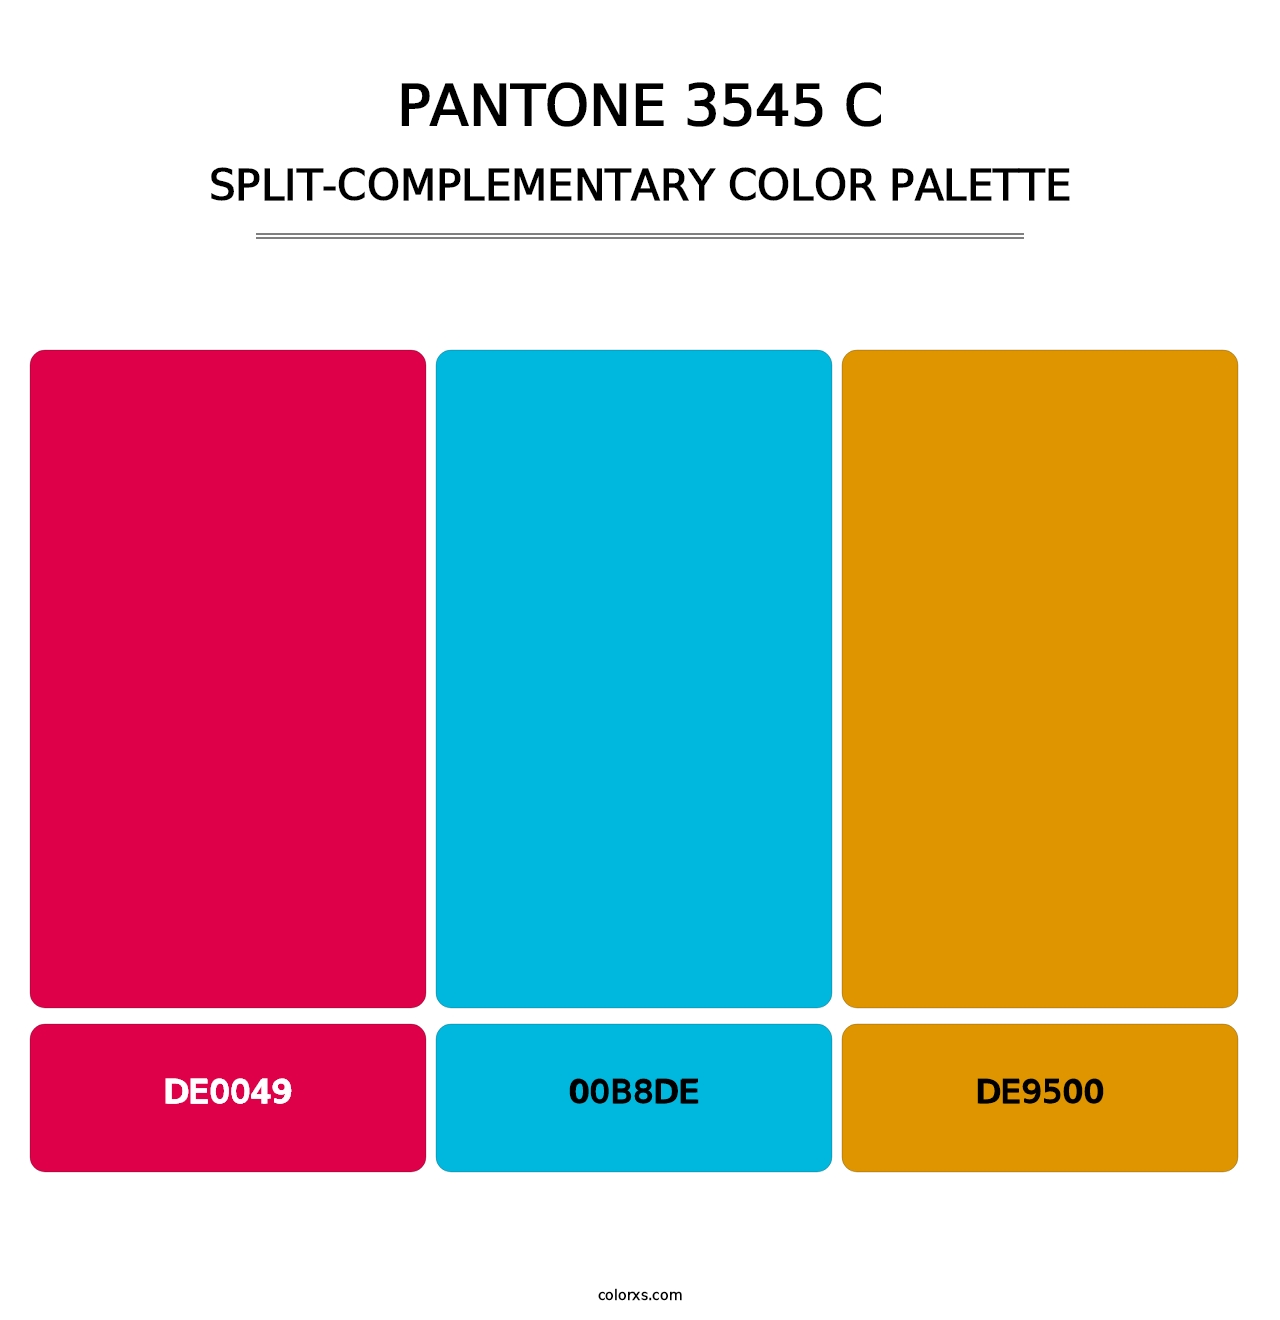 PANTONE 3545 C - Split-Complementary Color Palette